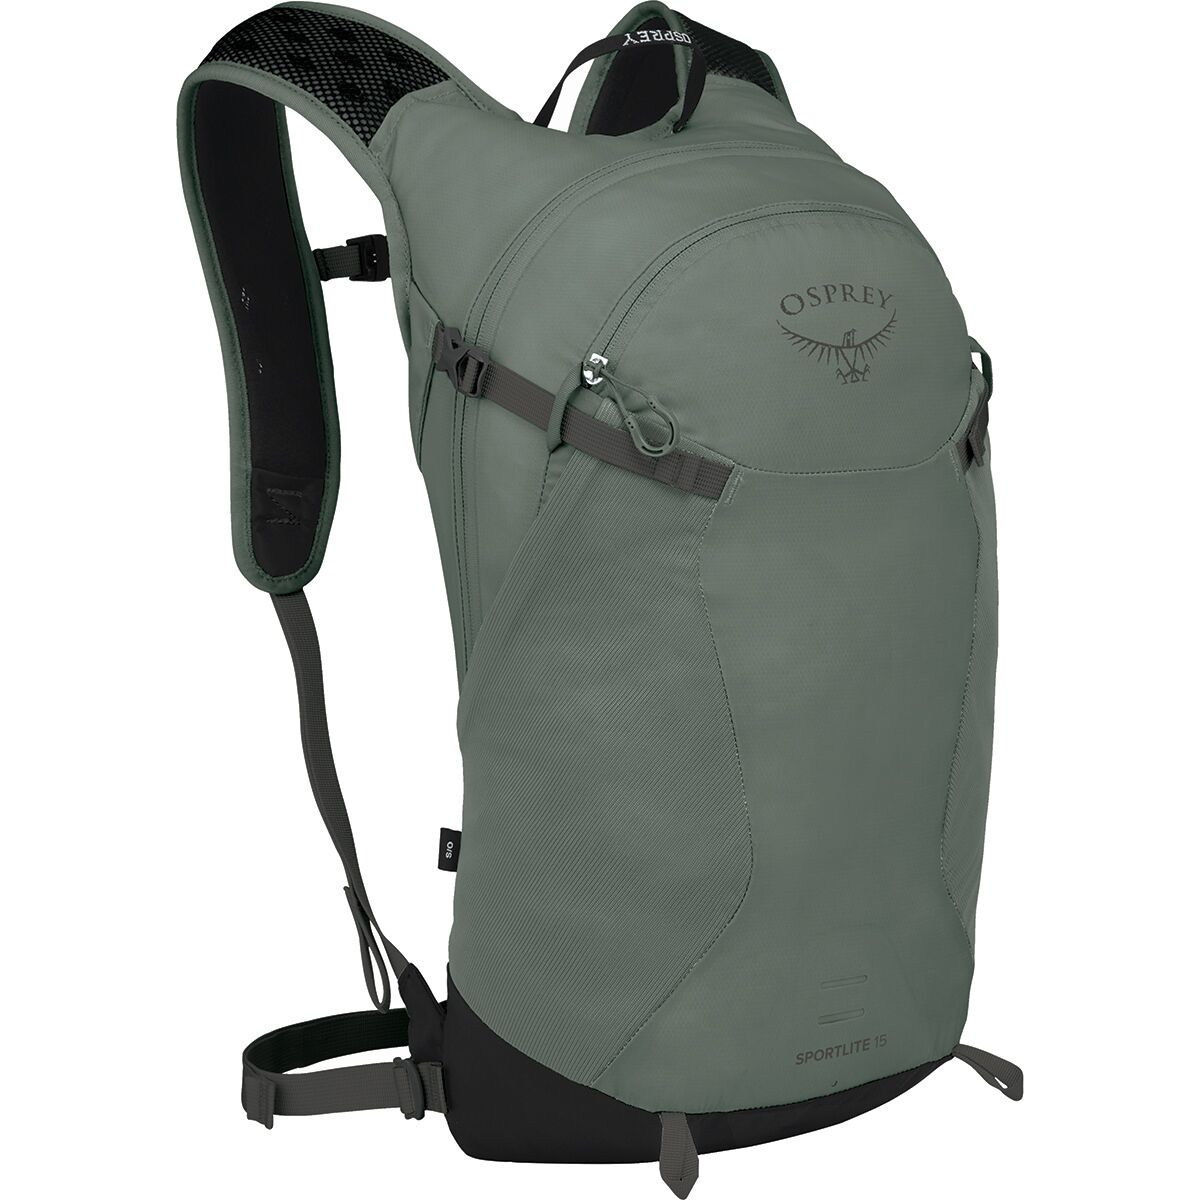 zeewier naar voren gebracht pot Osprey Packs Sportlite 15L Backpack - Accessories